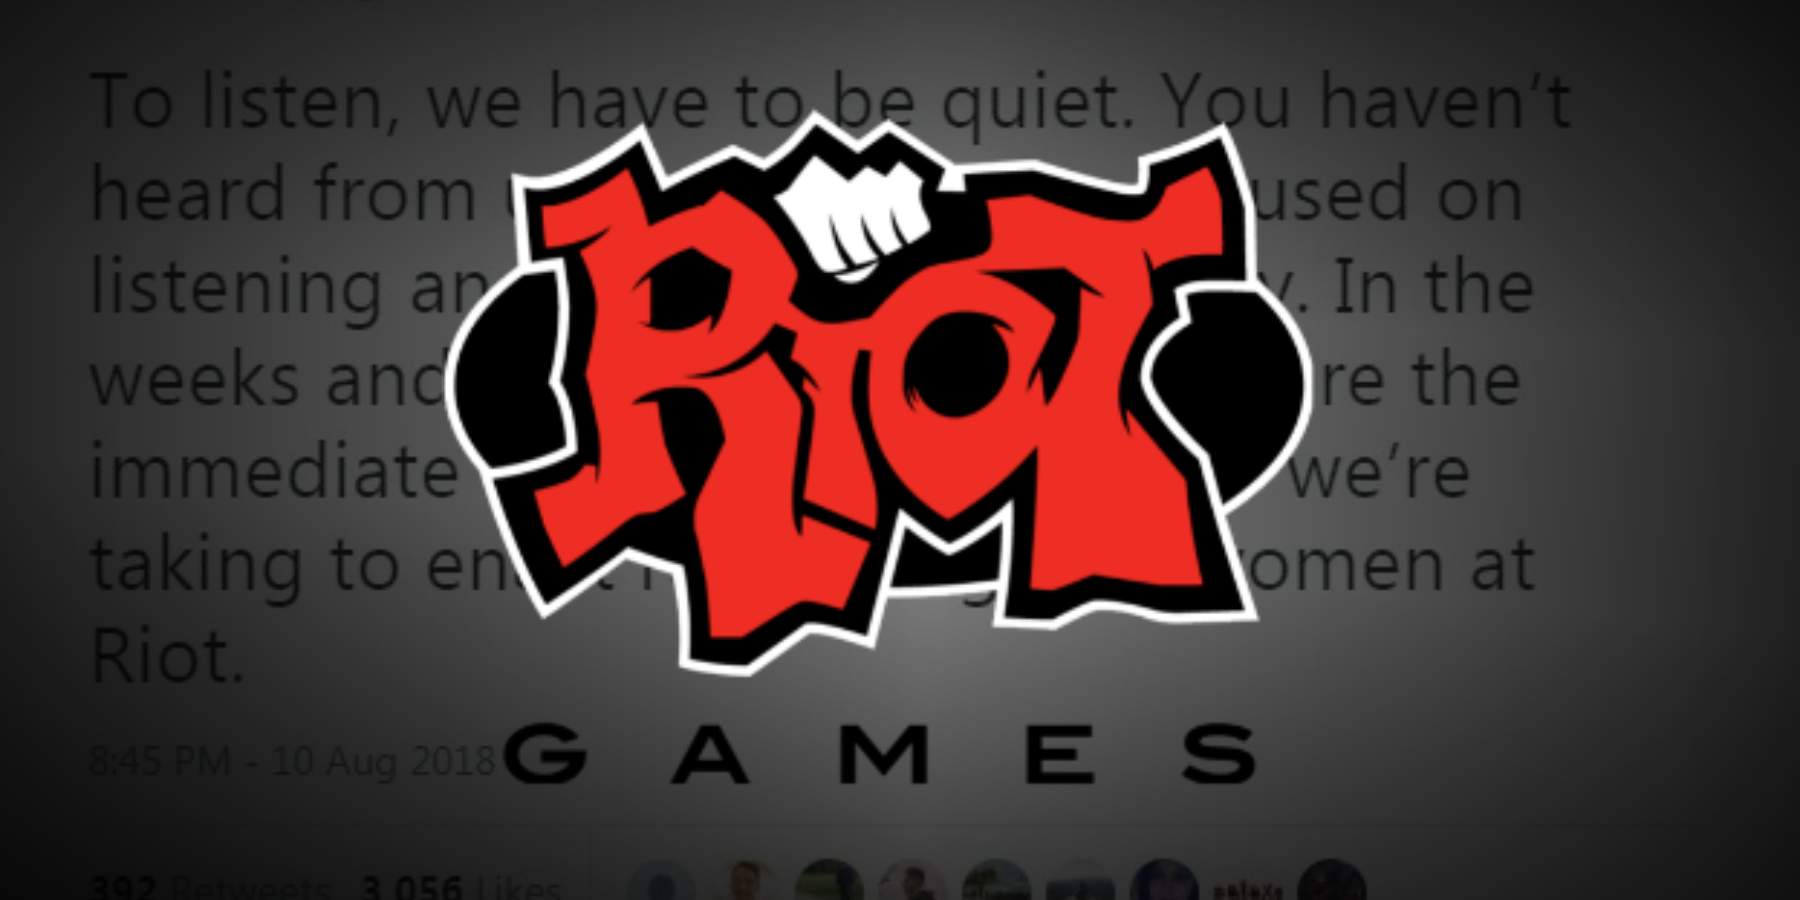 Riot games личный. Райот геймс. Rinat games. Riot games игры. Райот геймс лого.